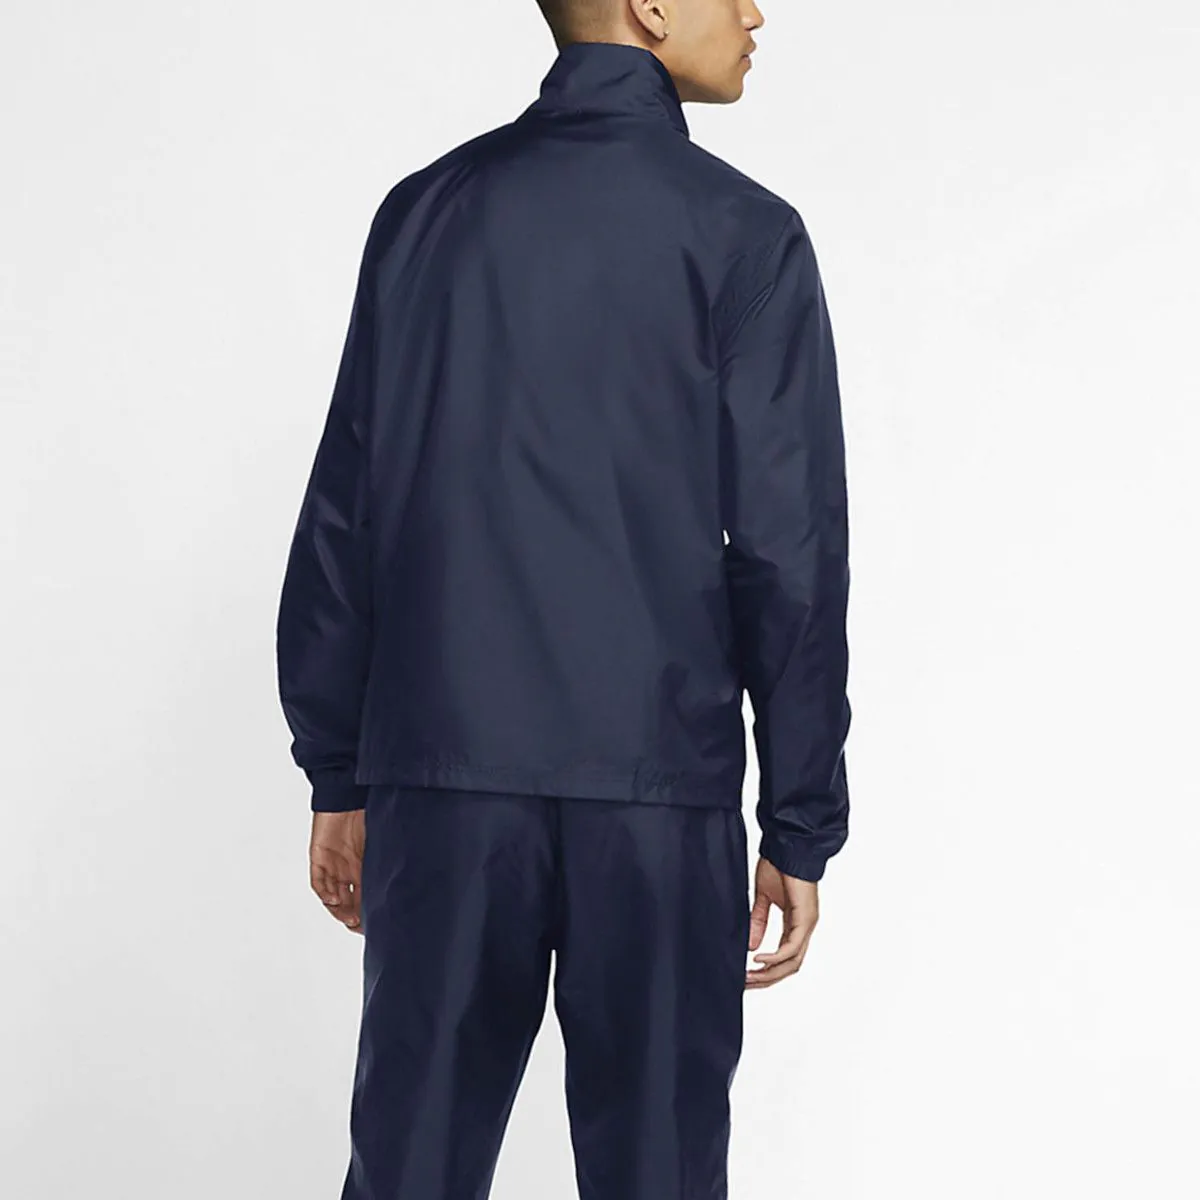 Nike Sportswear Men's Woven Tracksuit BV3030-410